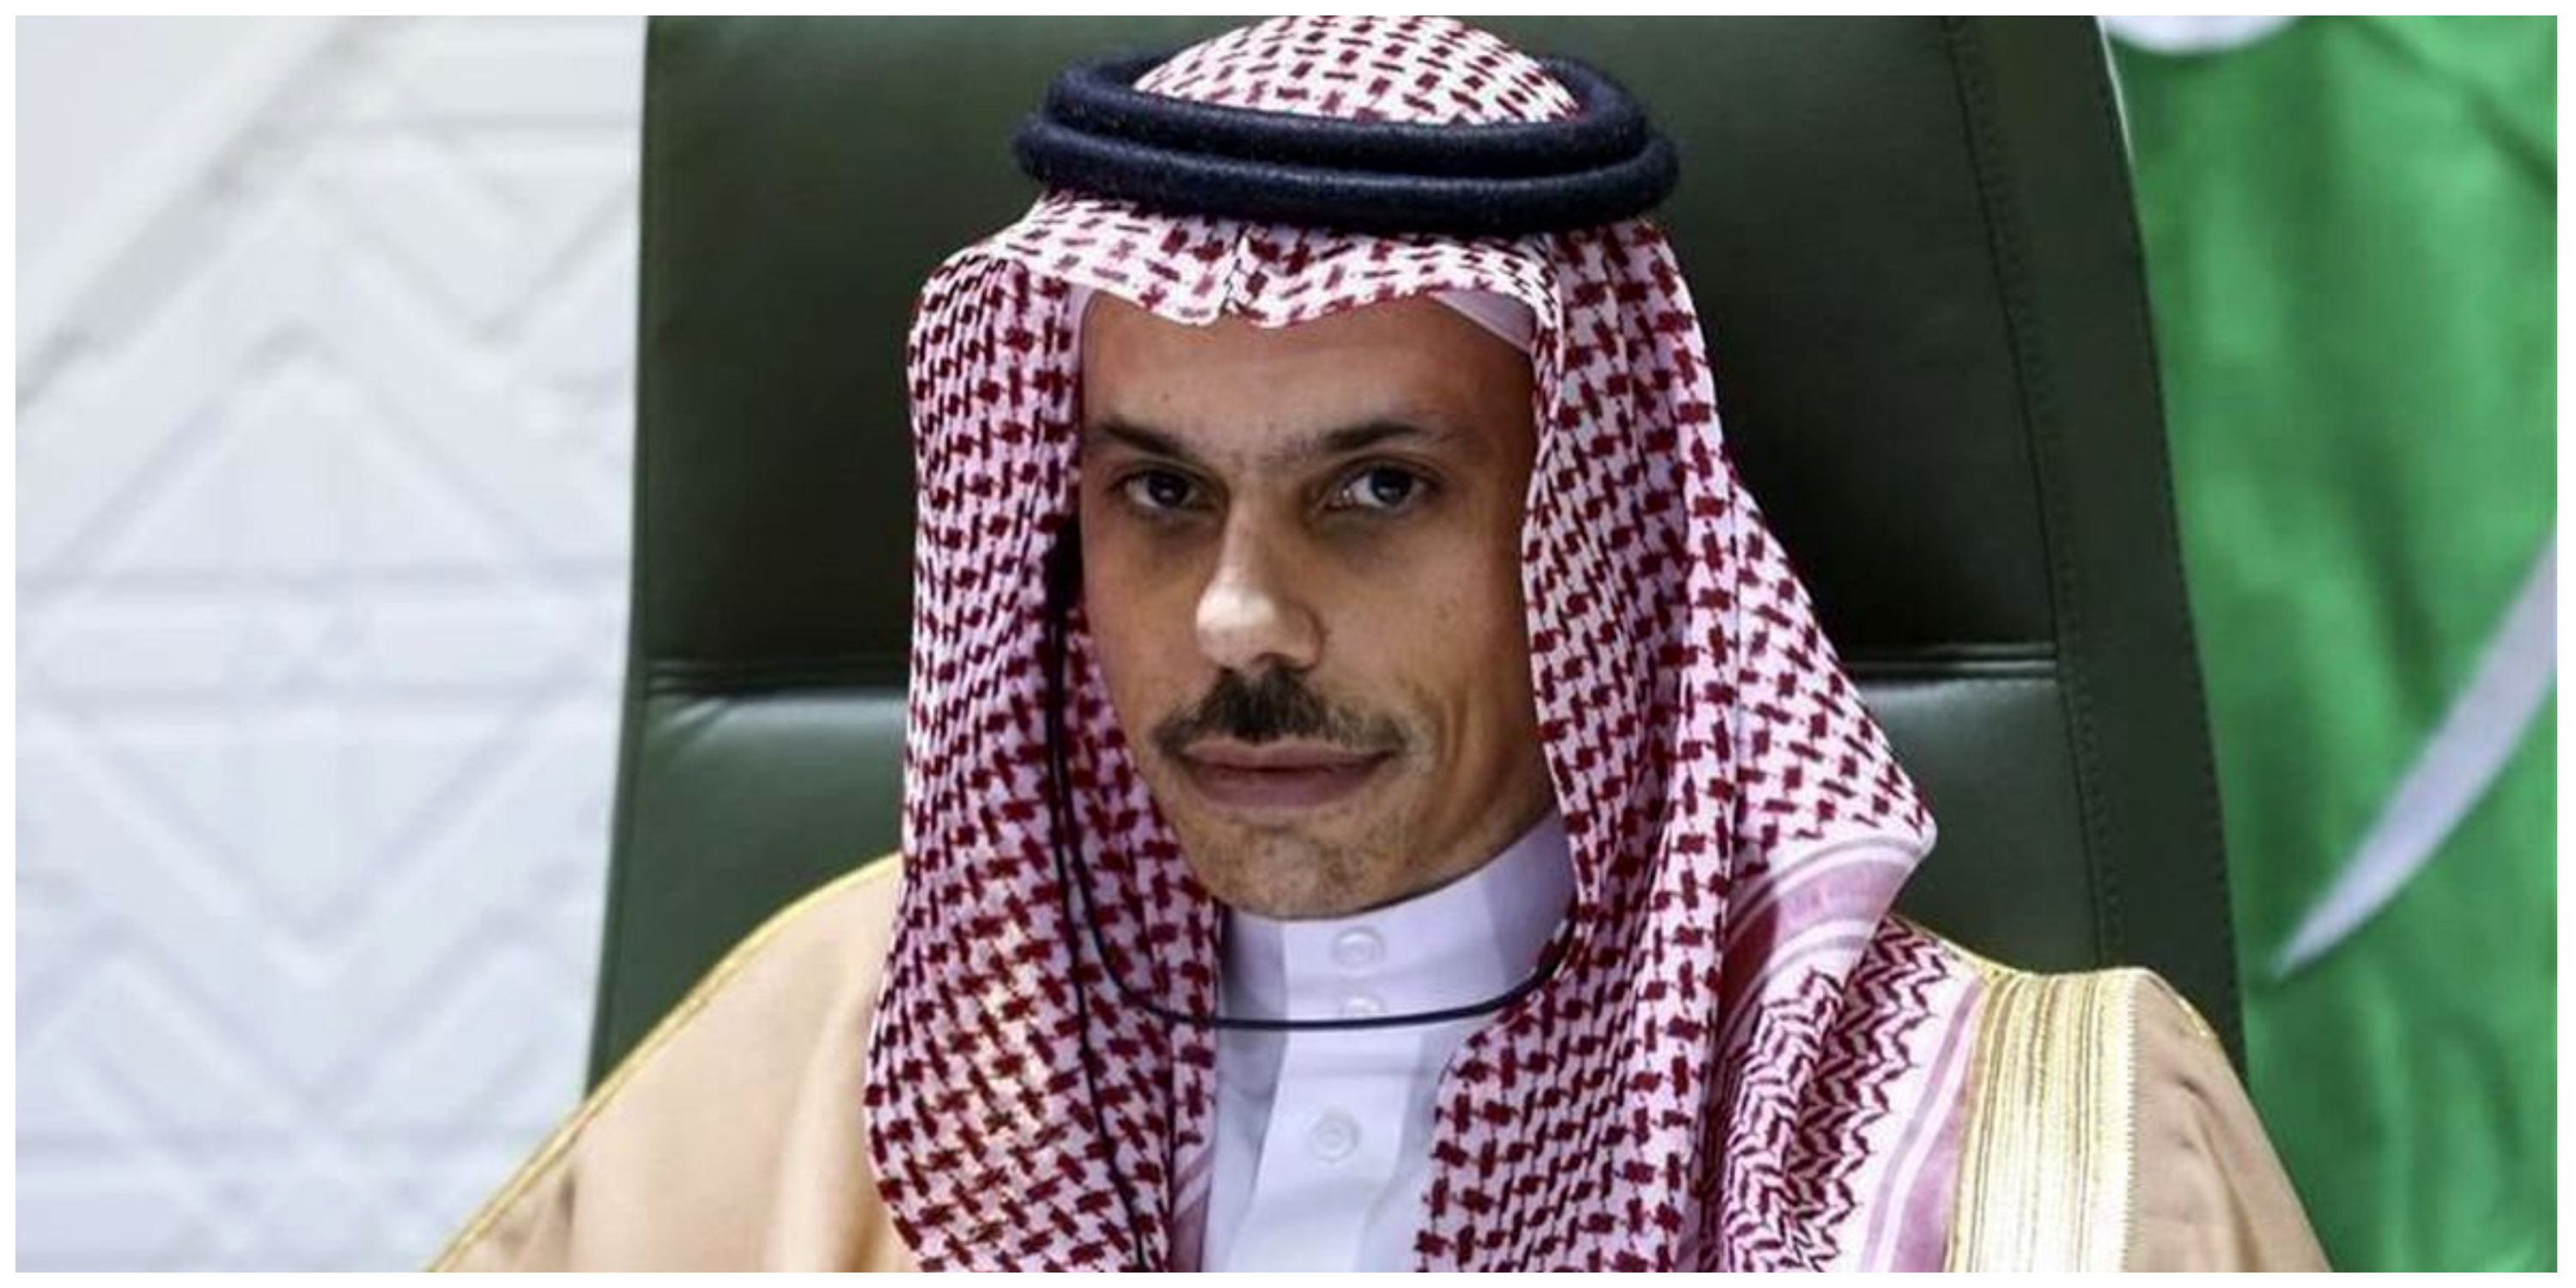 وزیر خارجه عربستان: عادی سازی روابط با اسرائیل به نفع منطقه است
